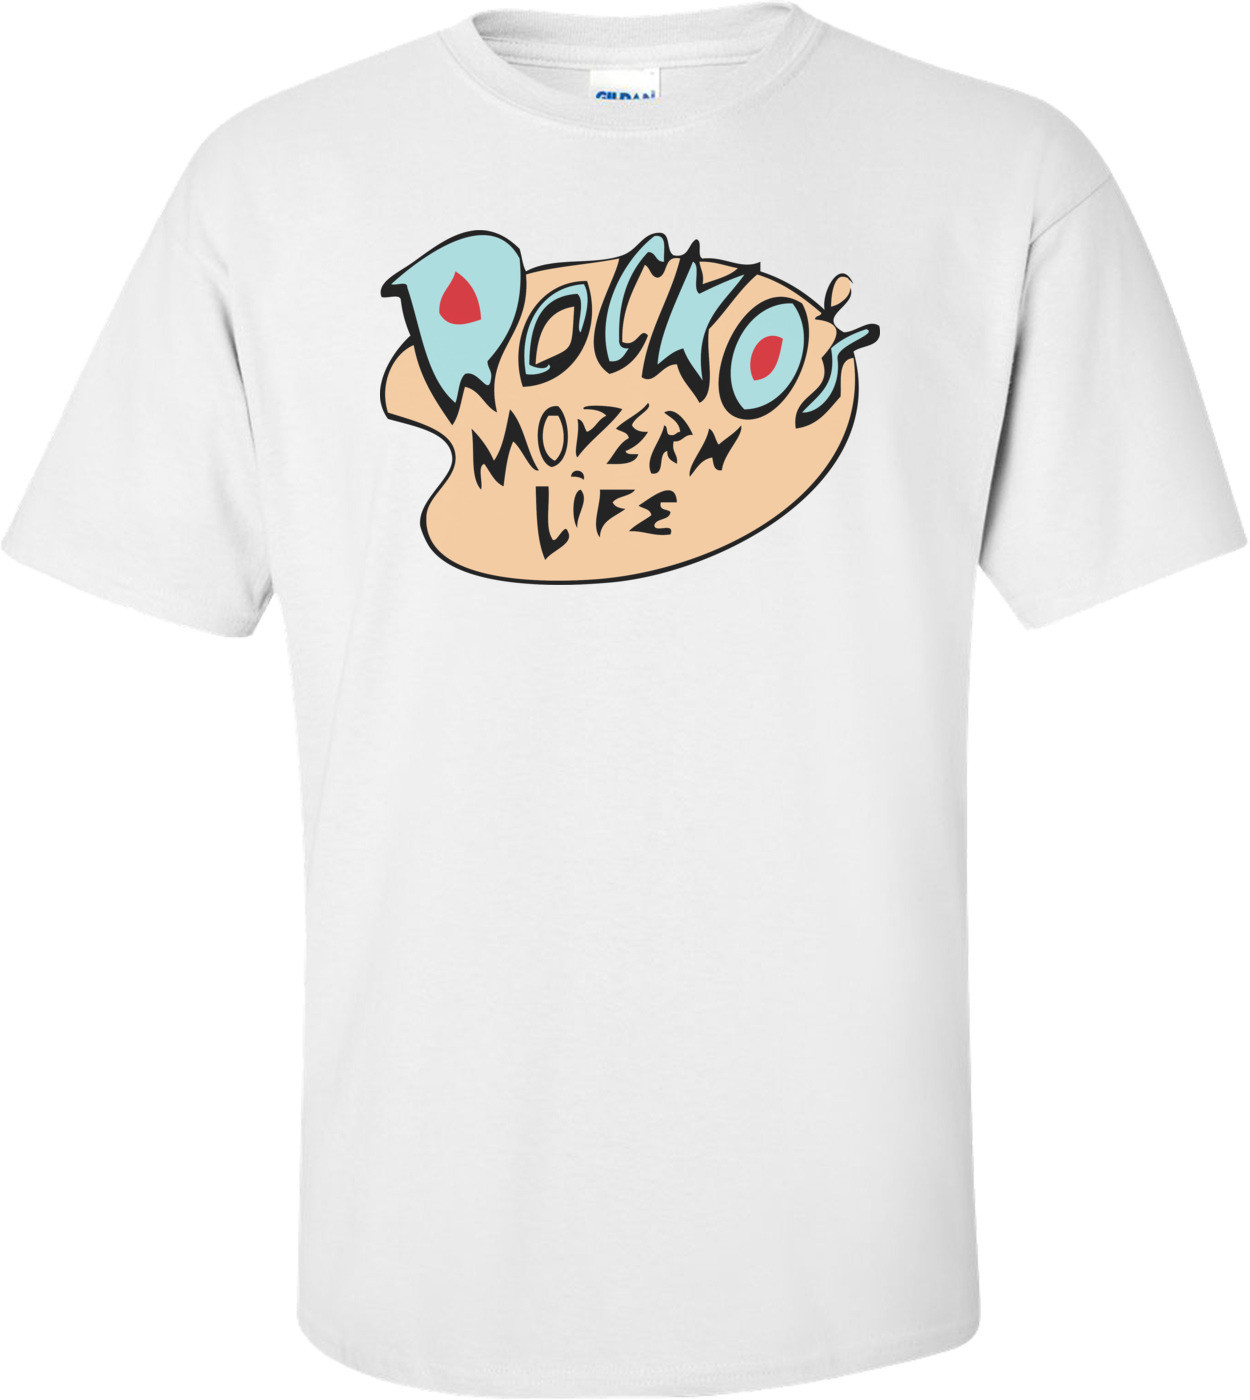 Rocko's Modern Life T-shirt